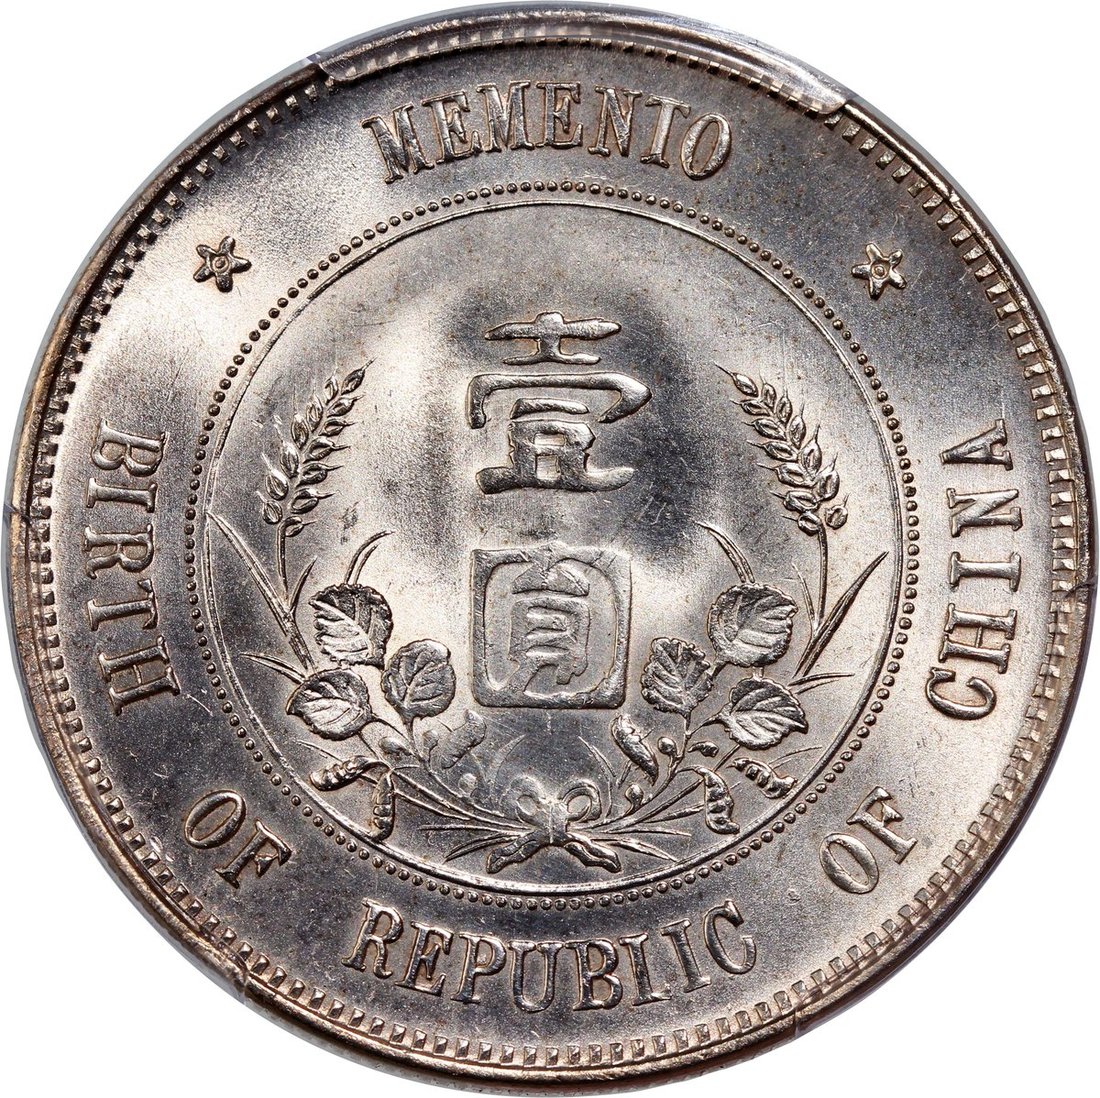 794 - Republic of China, silver Memento dollar, 1912, (Y-318 LM-48),